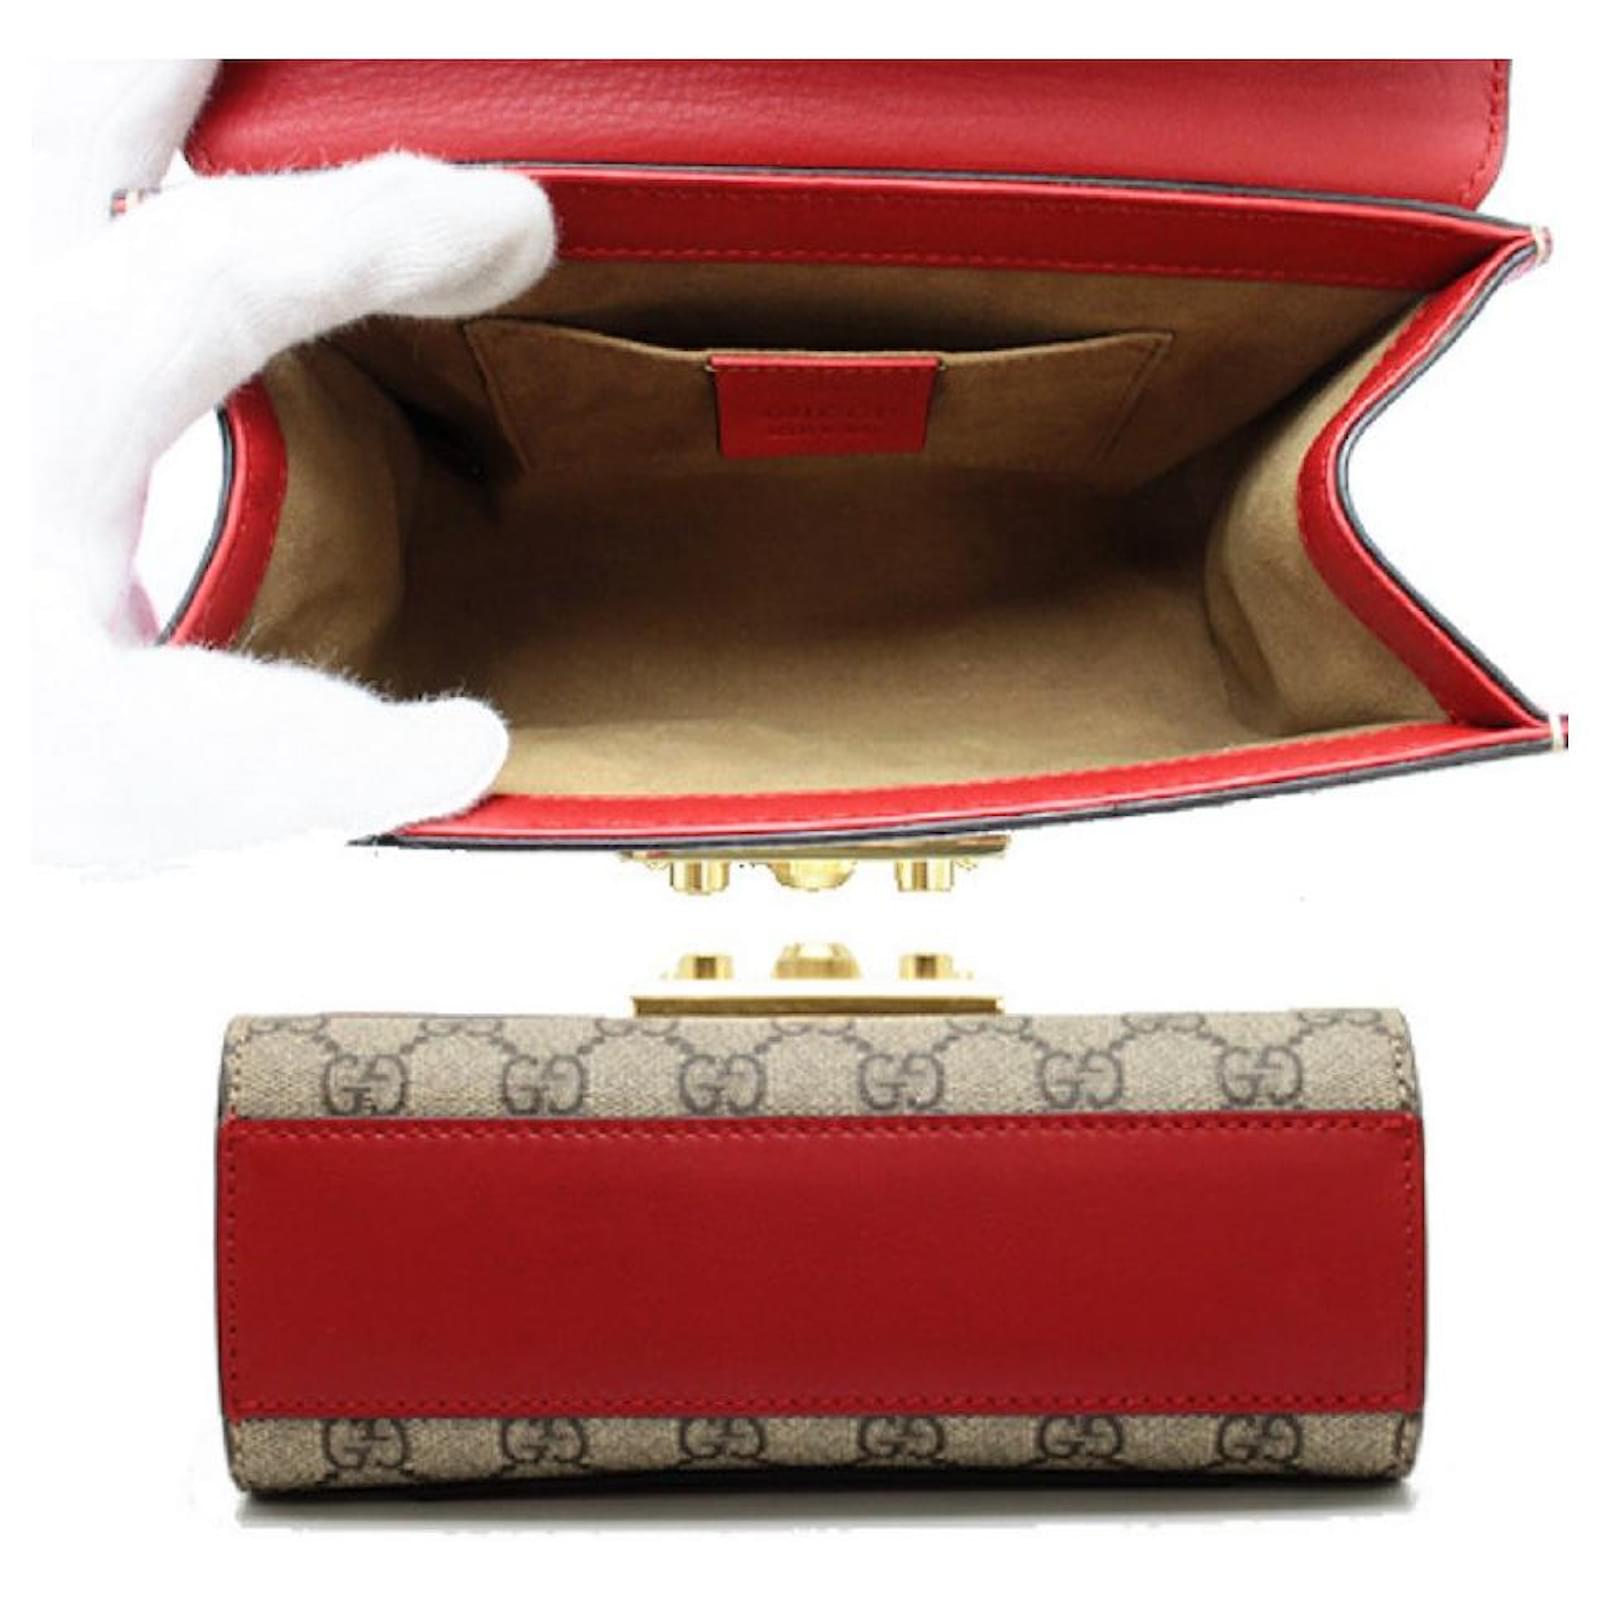 GG Supreme Padlock Shoulder Bag, Used & Preloved Gucci Shoulder Bag, LXR  USA, Red